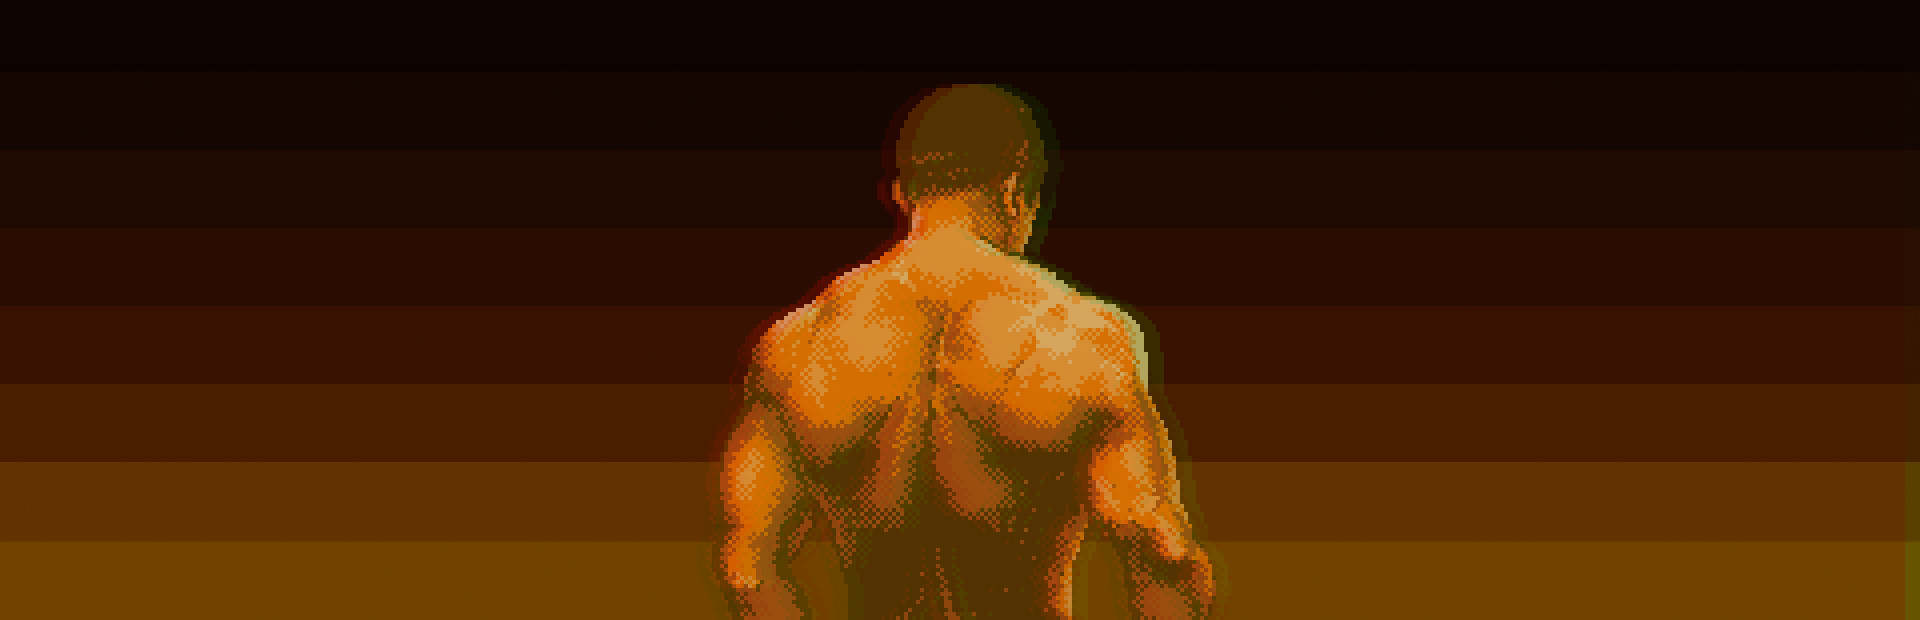 8-Bit Commando cover image